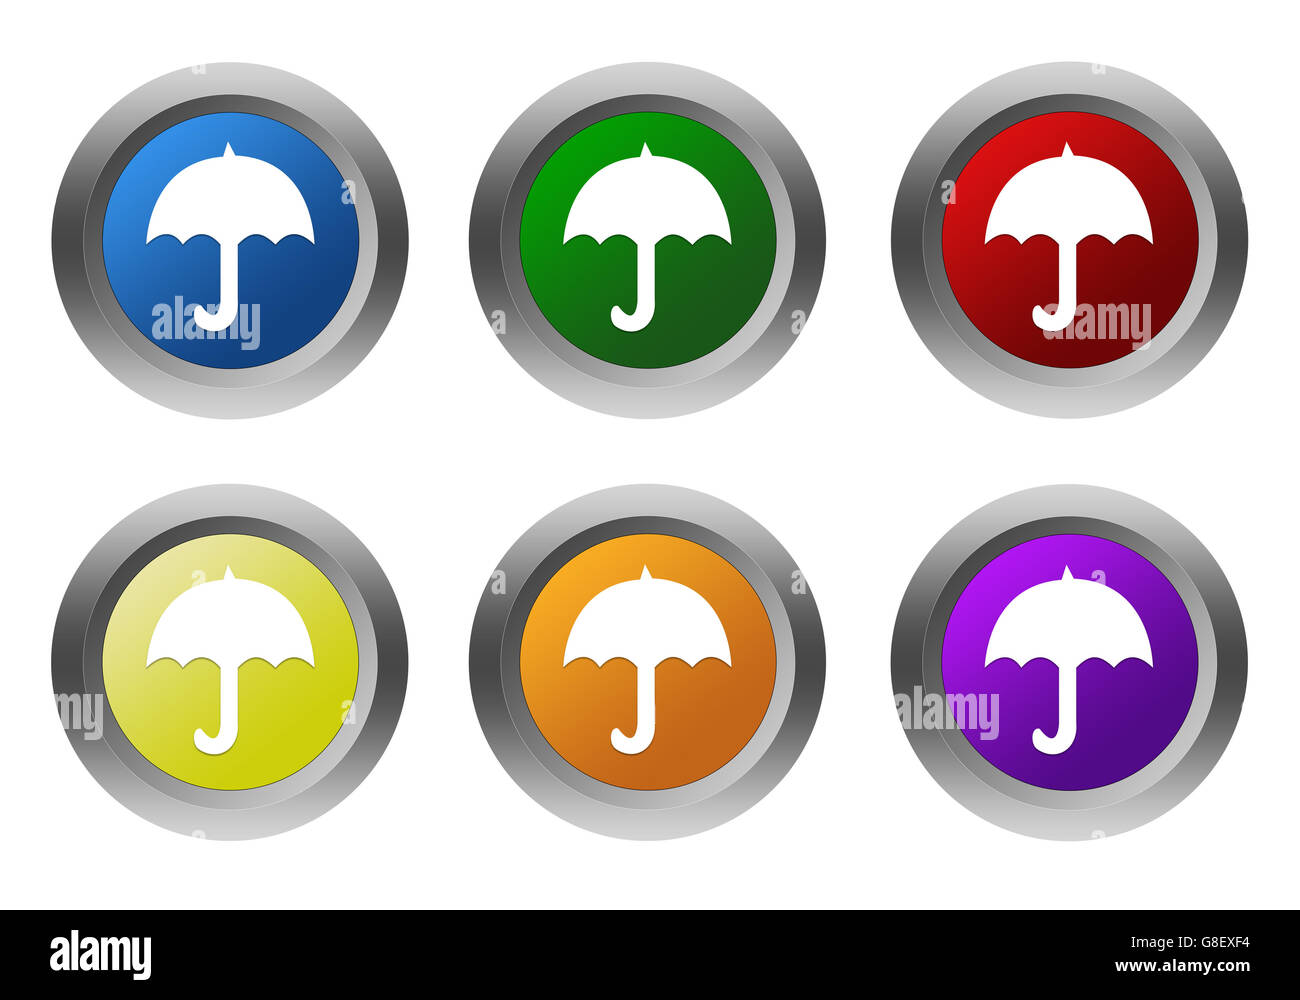 Reihe von bunten abgerundeten Tasten mit Regenschirm-Symbol in blau, grün, gelb, orange, lila und rote Farben Stockfoto